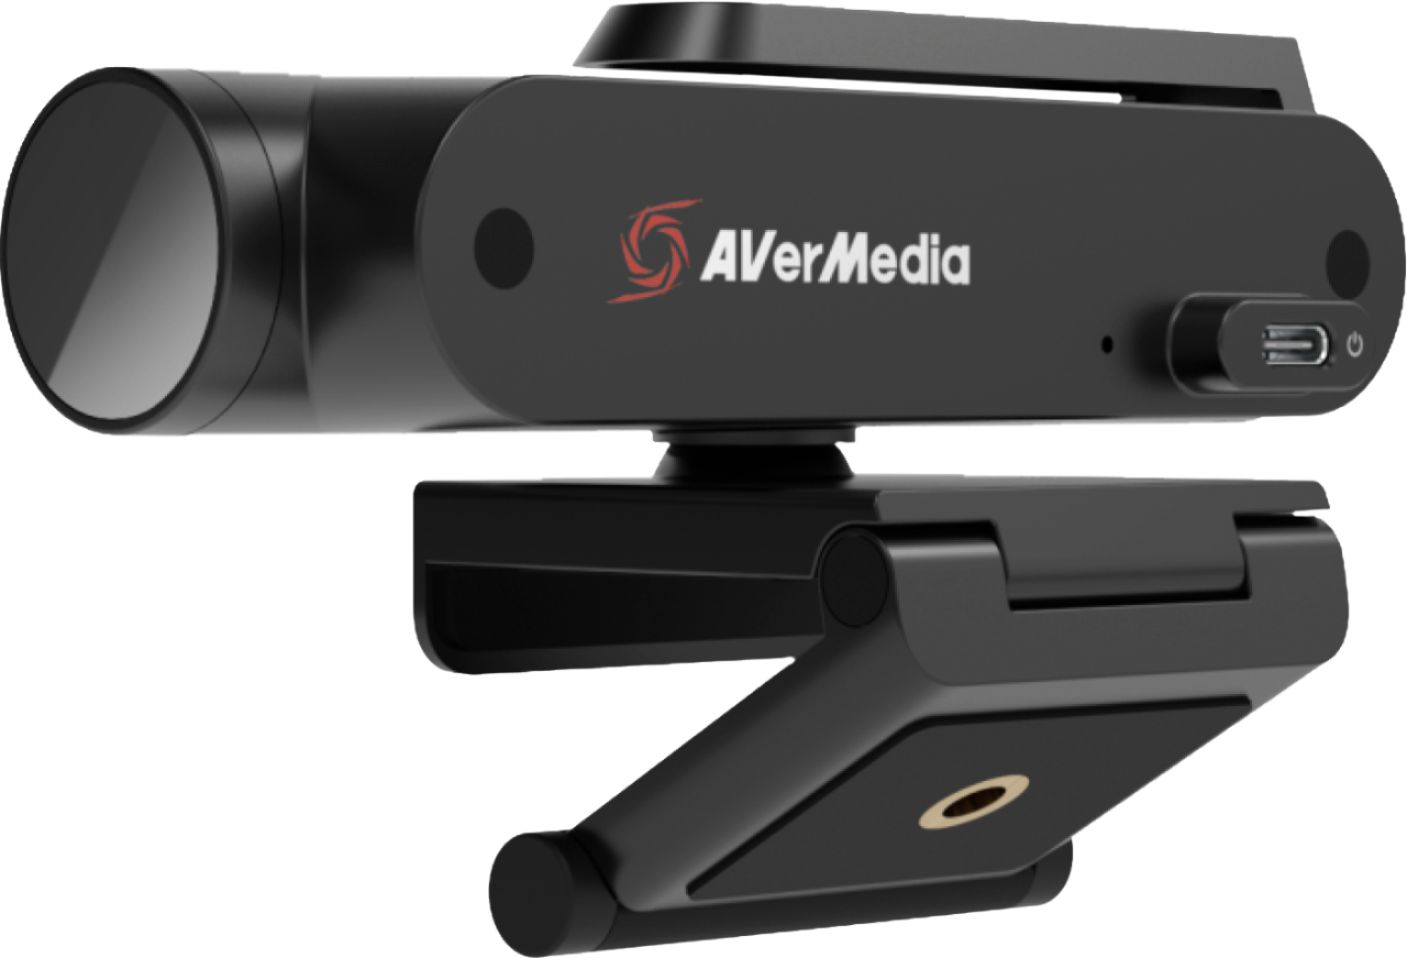 Angle View: AVerMedia - Live Streamer CAM PW513 3840 x 2160 Webcam